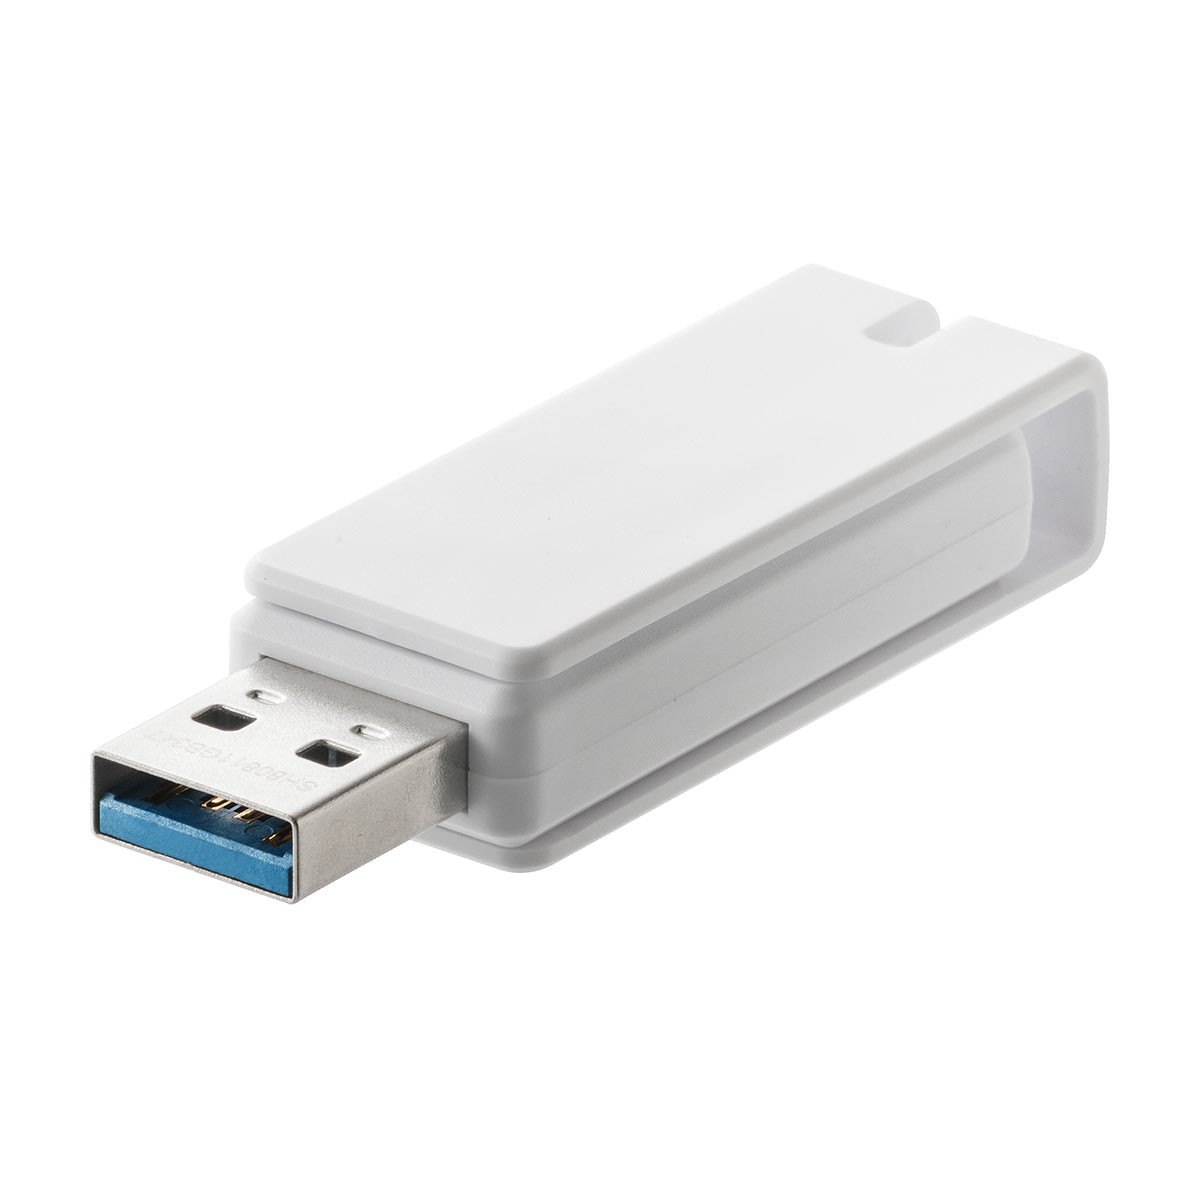 600-3US16GW おすすめネット サンワダイレクト限定品 ネコポス対応 USBメモリ 16GB USB3.0 スイング式 卒業 キャップレス 入学 小型 おしゃれ ストラップ付き 人気No.1 ホワイト